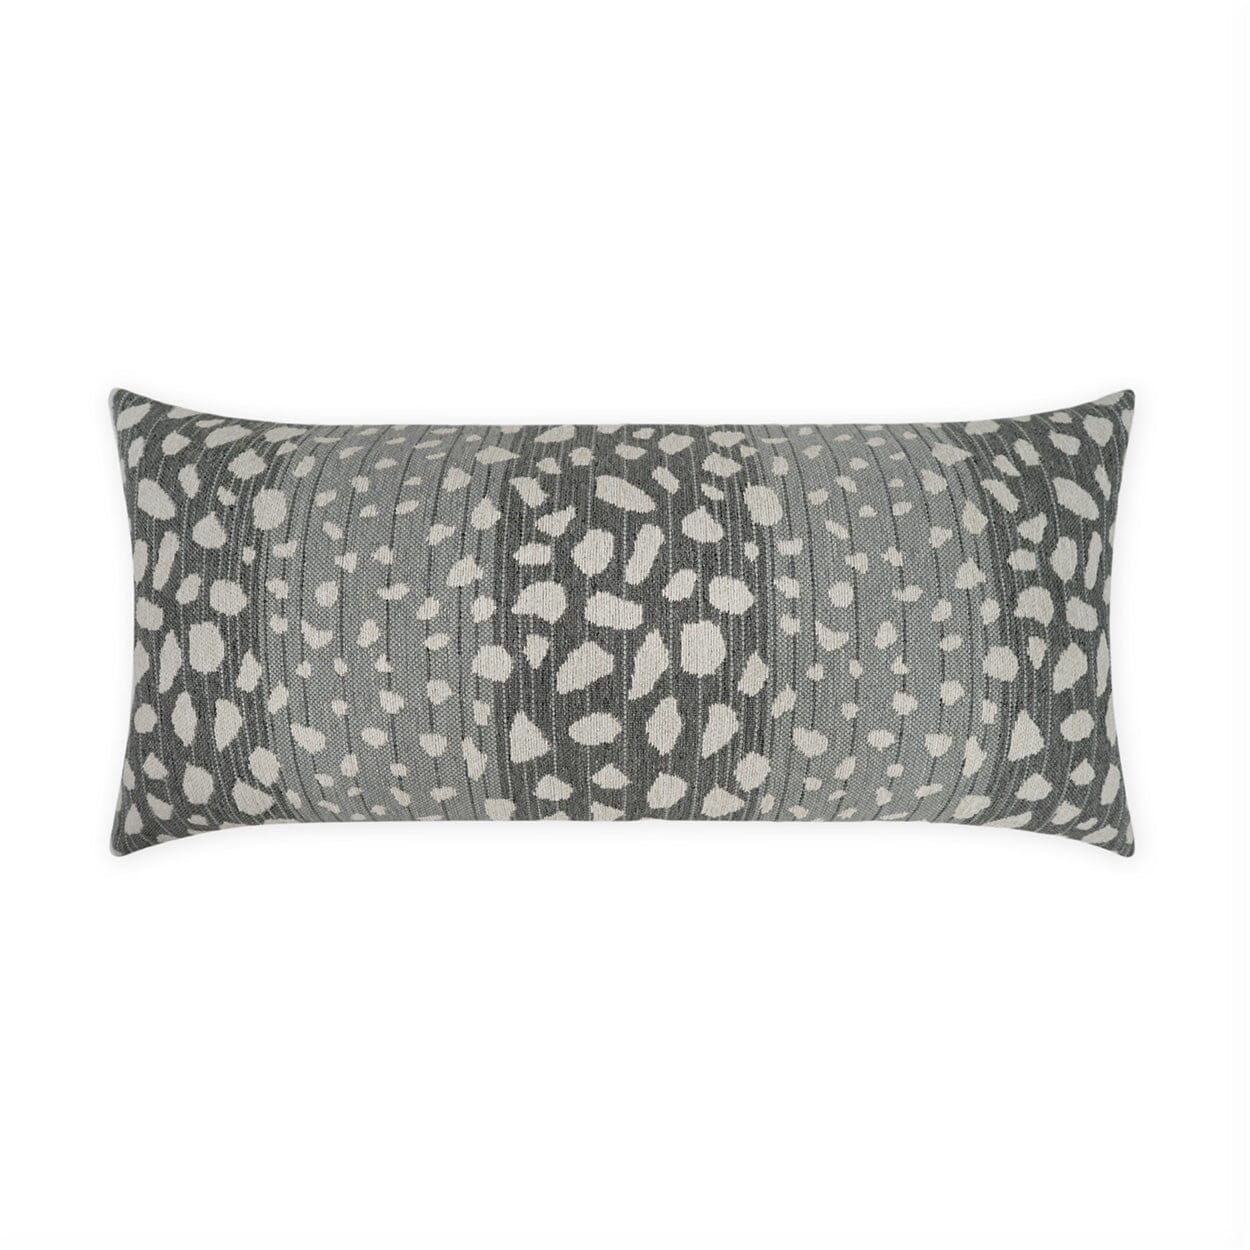 D.V. Kap 12" x 24" Outdoor Lumbar Pillow | Deerskin Flannel Pillows D.V Kap Home